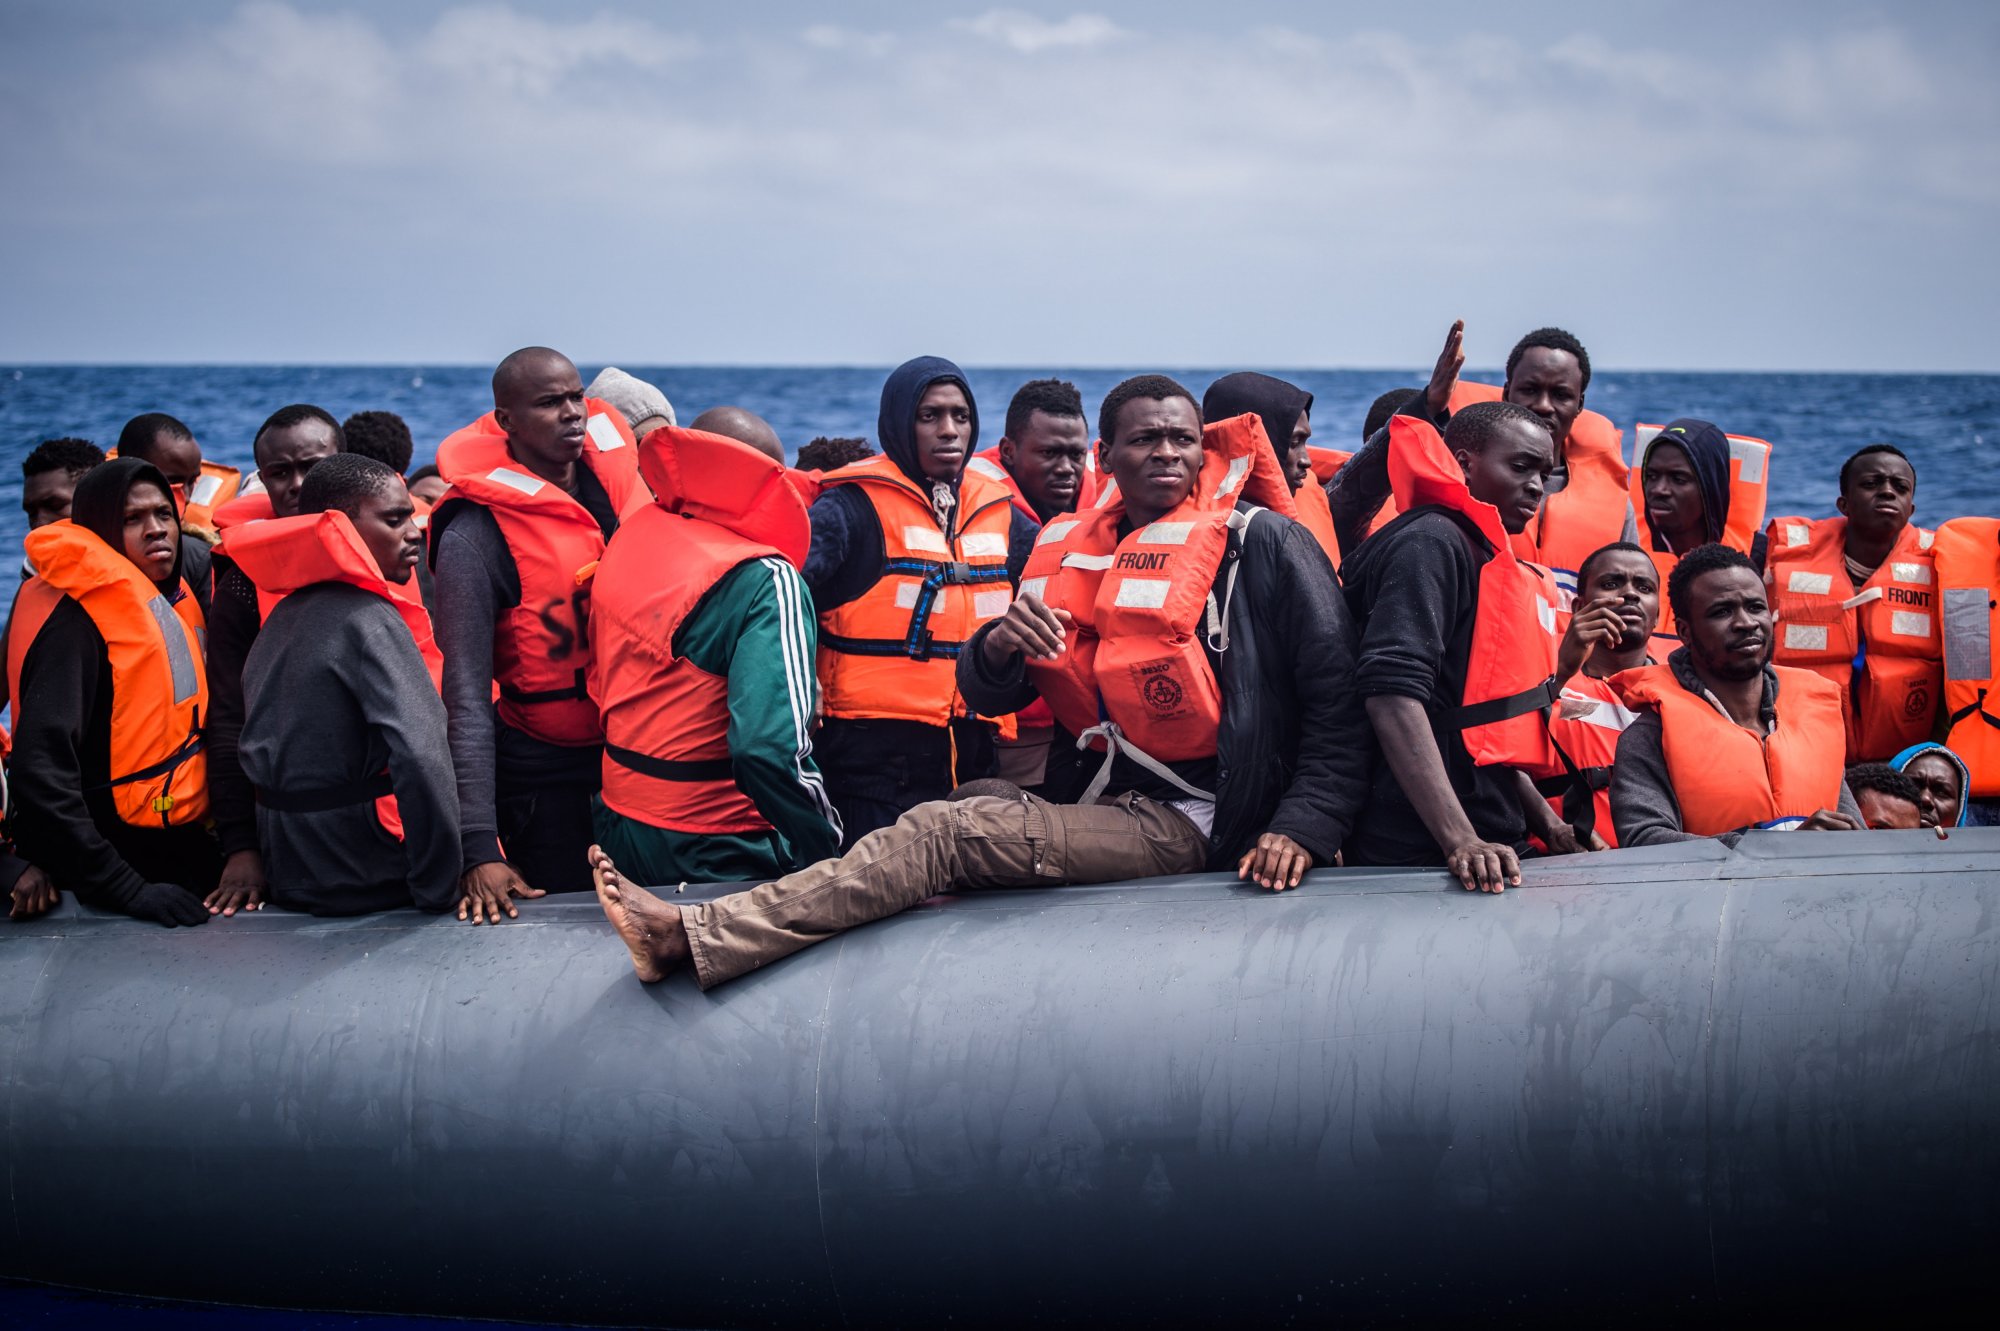 Δημοσιεύματα – βόμβα του διεθνούς τύπου:  Κατηγορεί την Ευρώπη ότι χρηματοδοτεί την εγκατάλειψη μεταναστών στη Σαχάρα